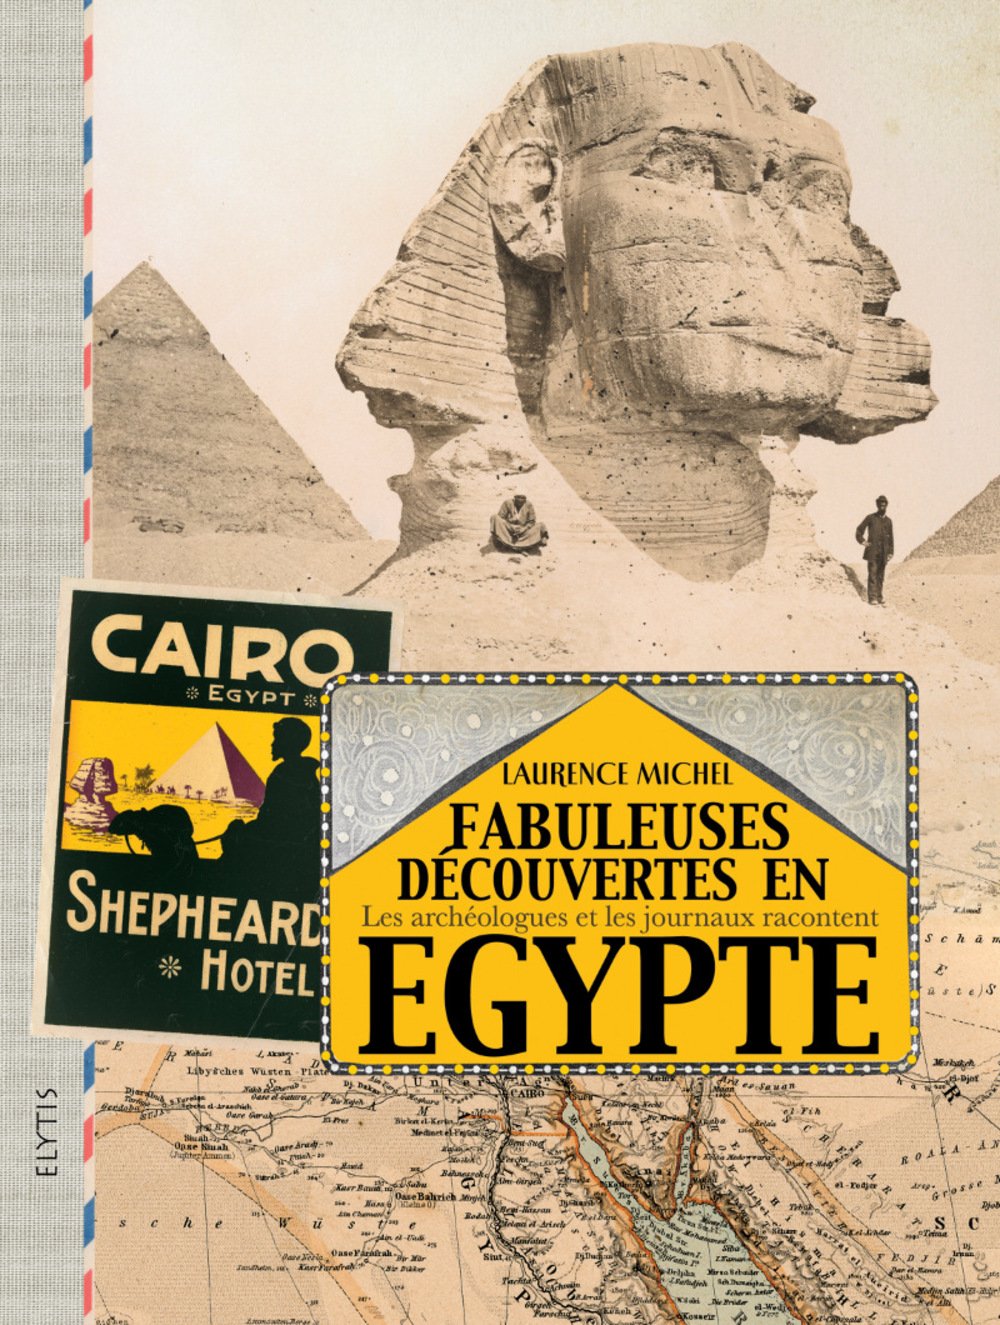 Fabuleuses découvertes en Egypte. Les archéologues et les journaux racontent, 2015, 272 p.